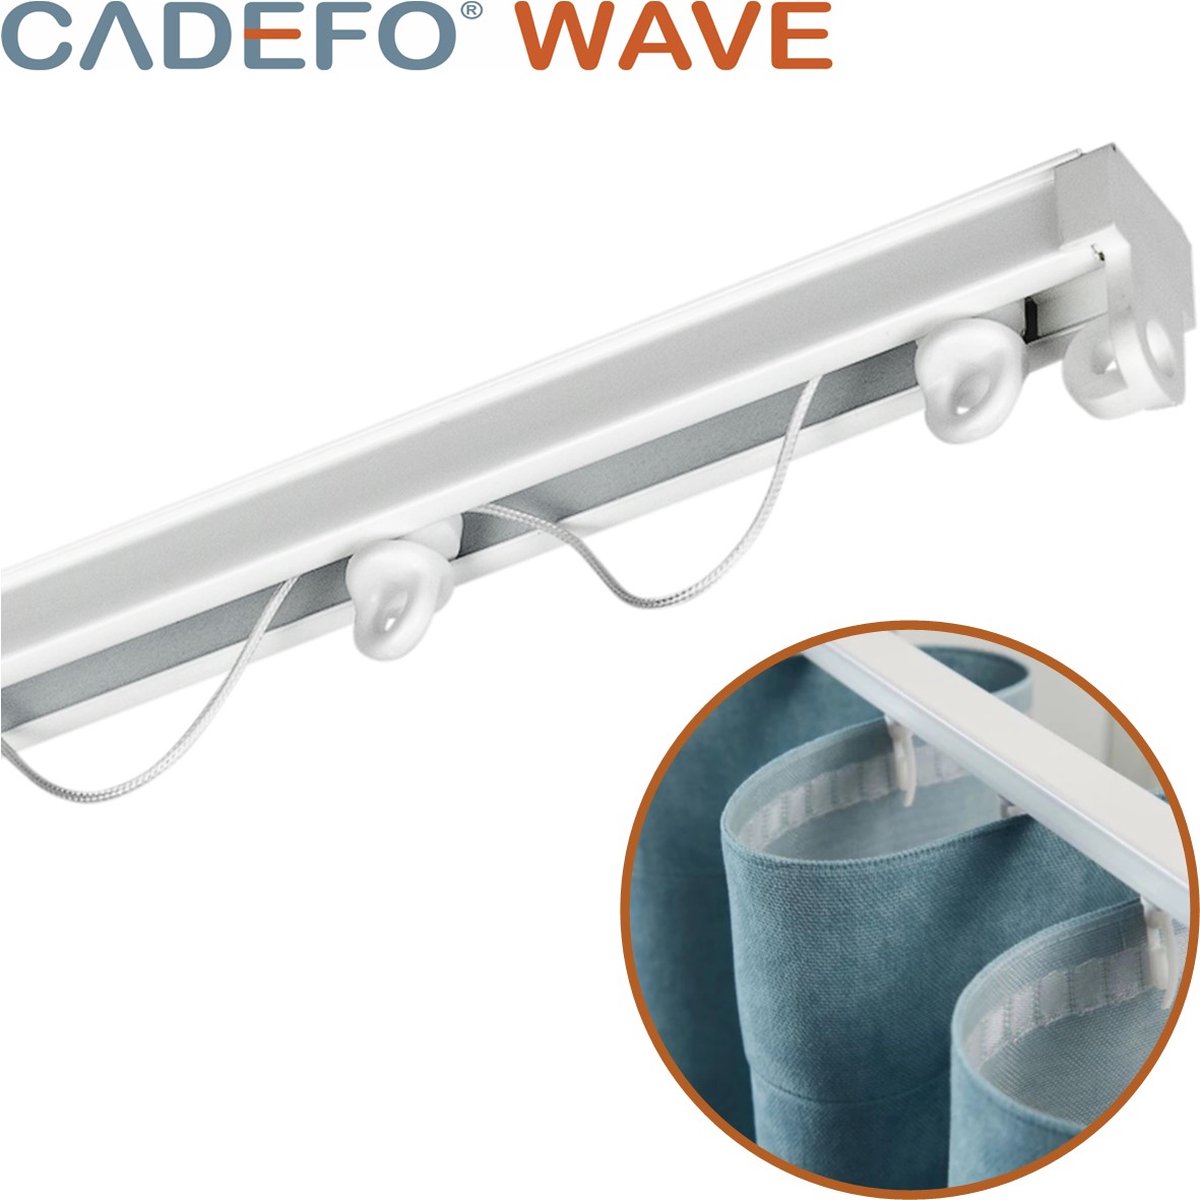 CADEFO WAVE (151 - 200 cm) Gordijnrails - Compleet op maat! - UIT 1 STUK - Leverbaar tot 6 meter - Plafondbevestiging - Lengte 175 cm